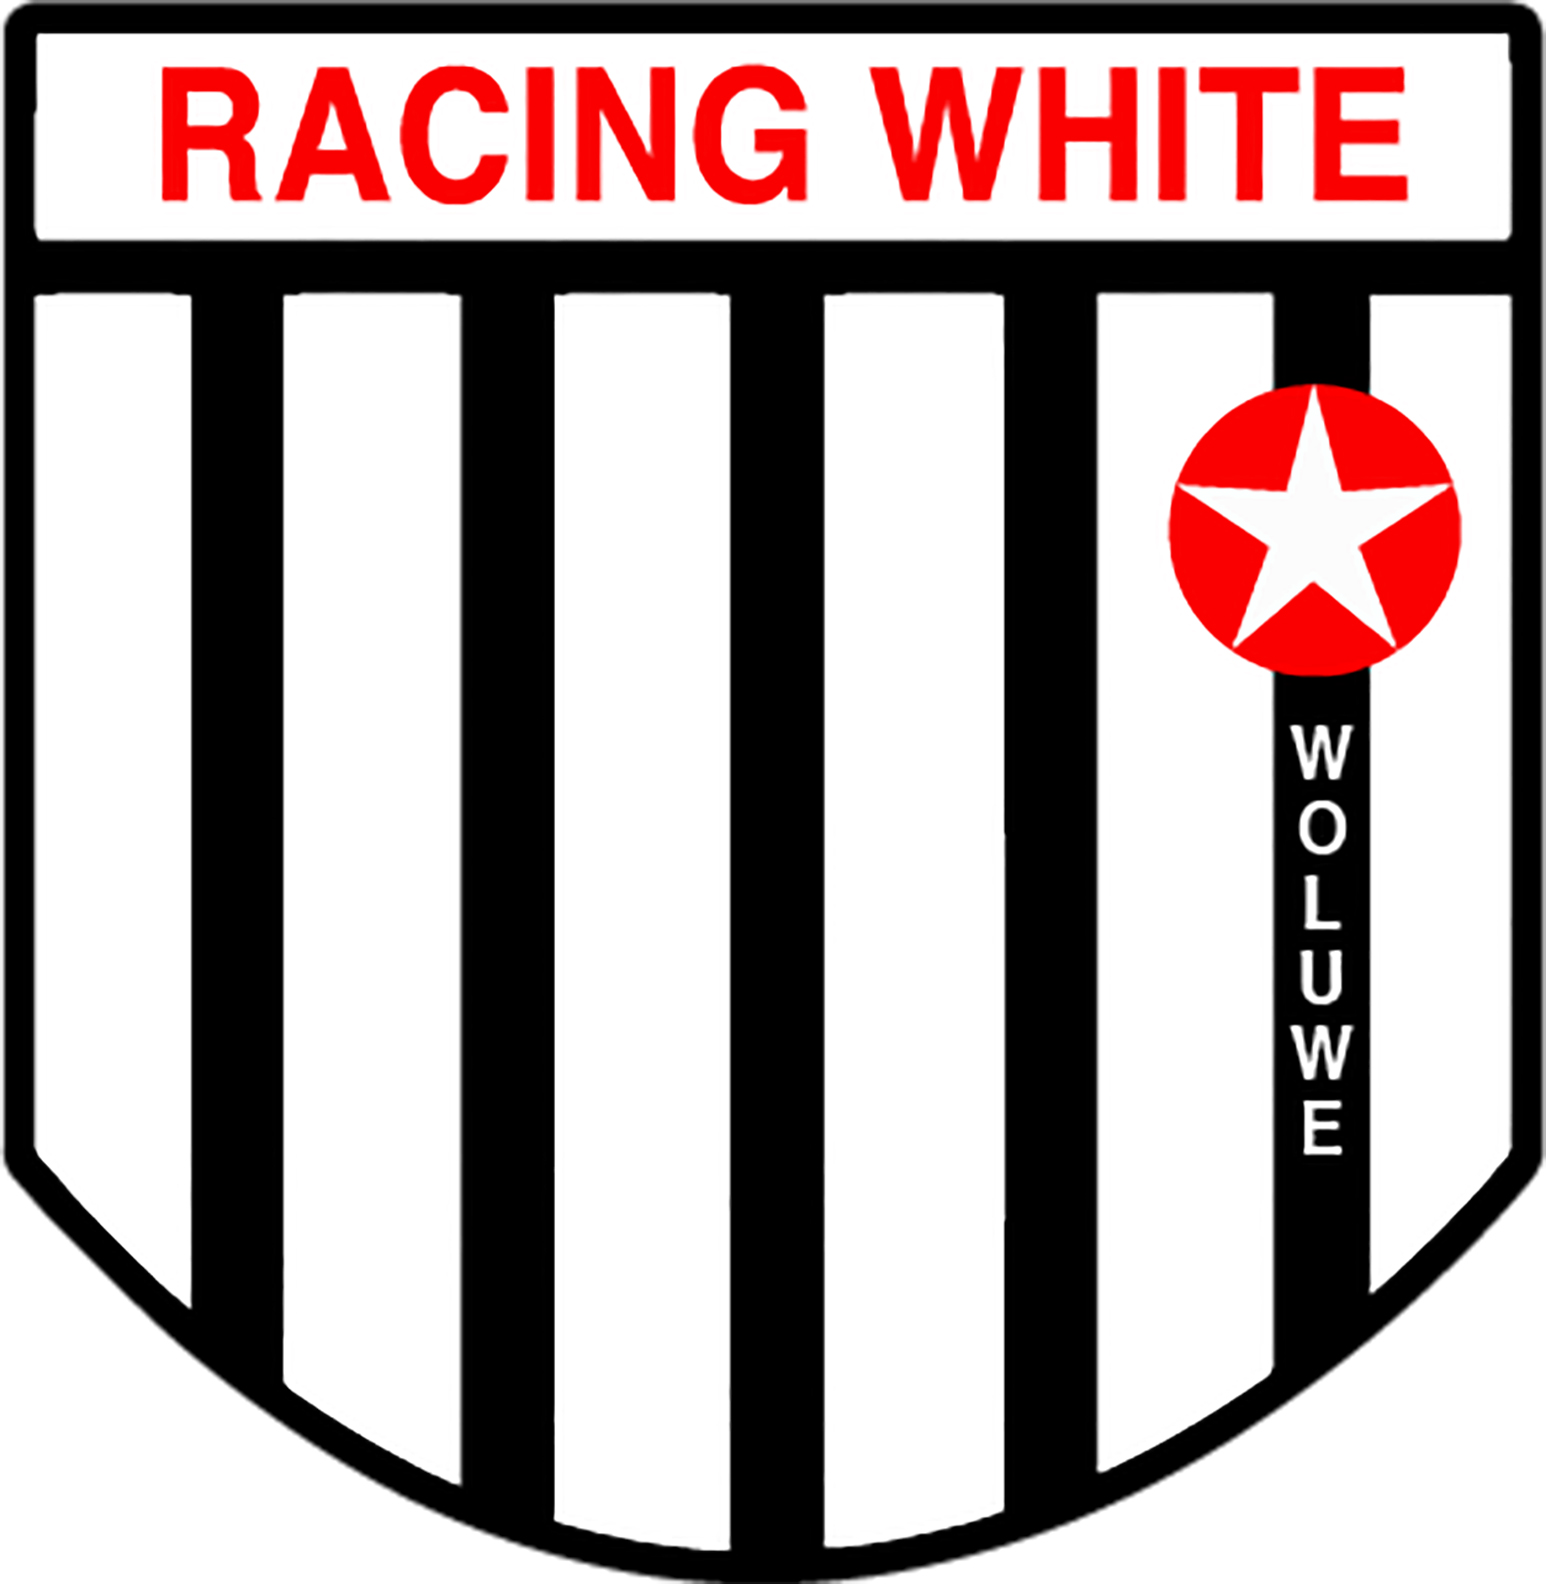 9 - Racing White Woluwe